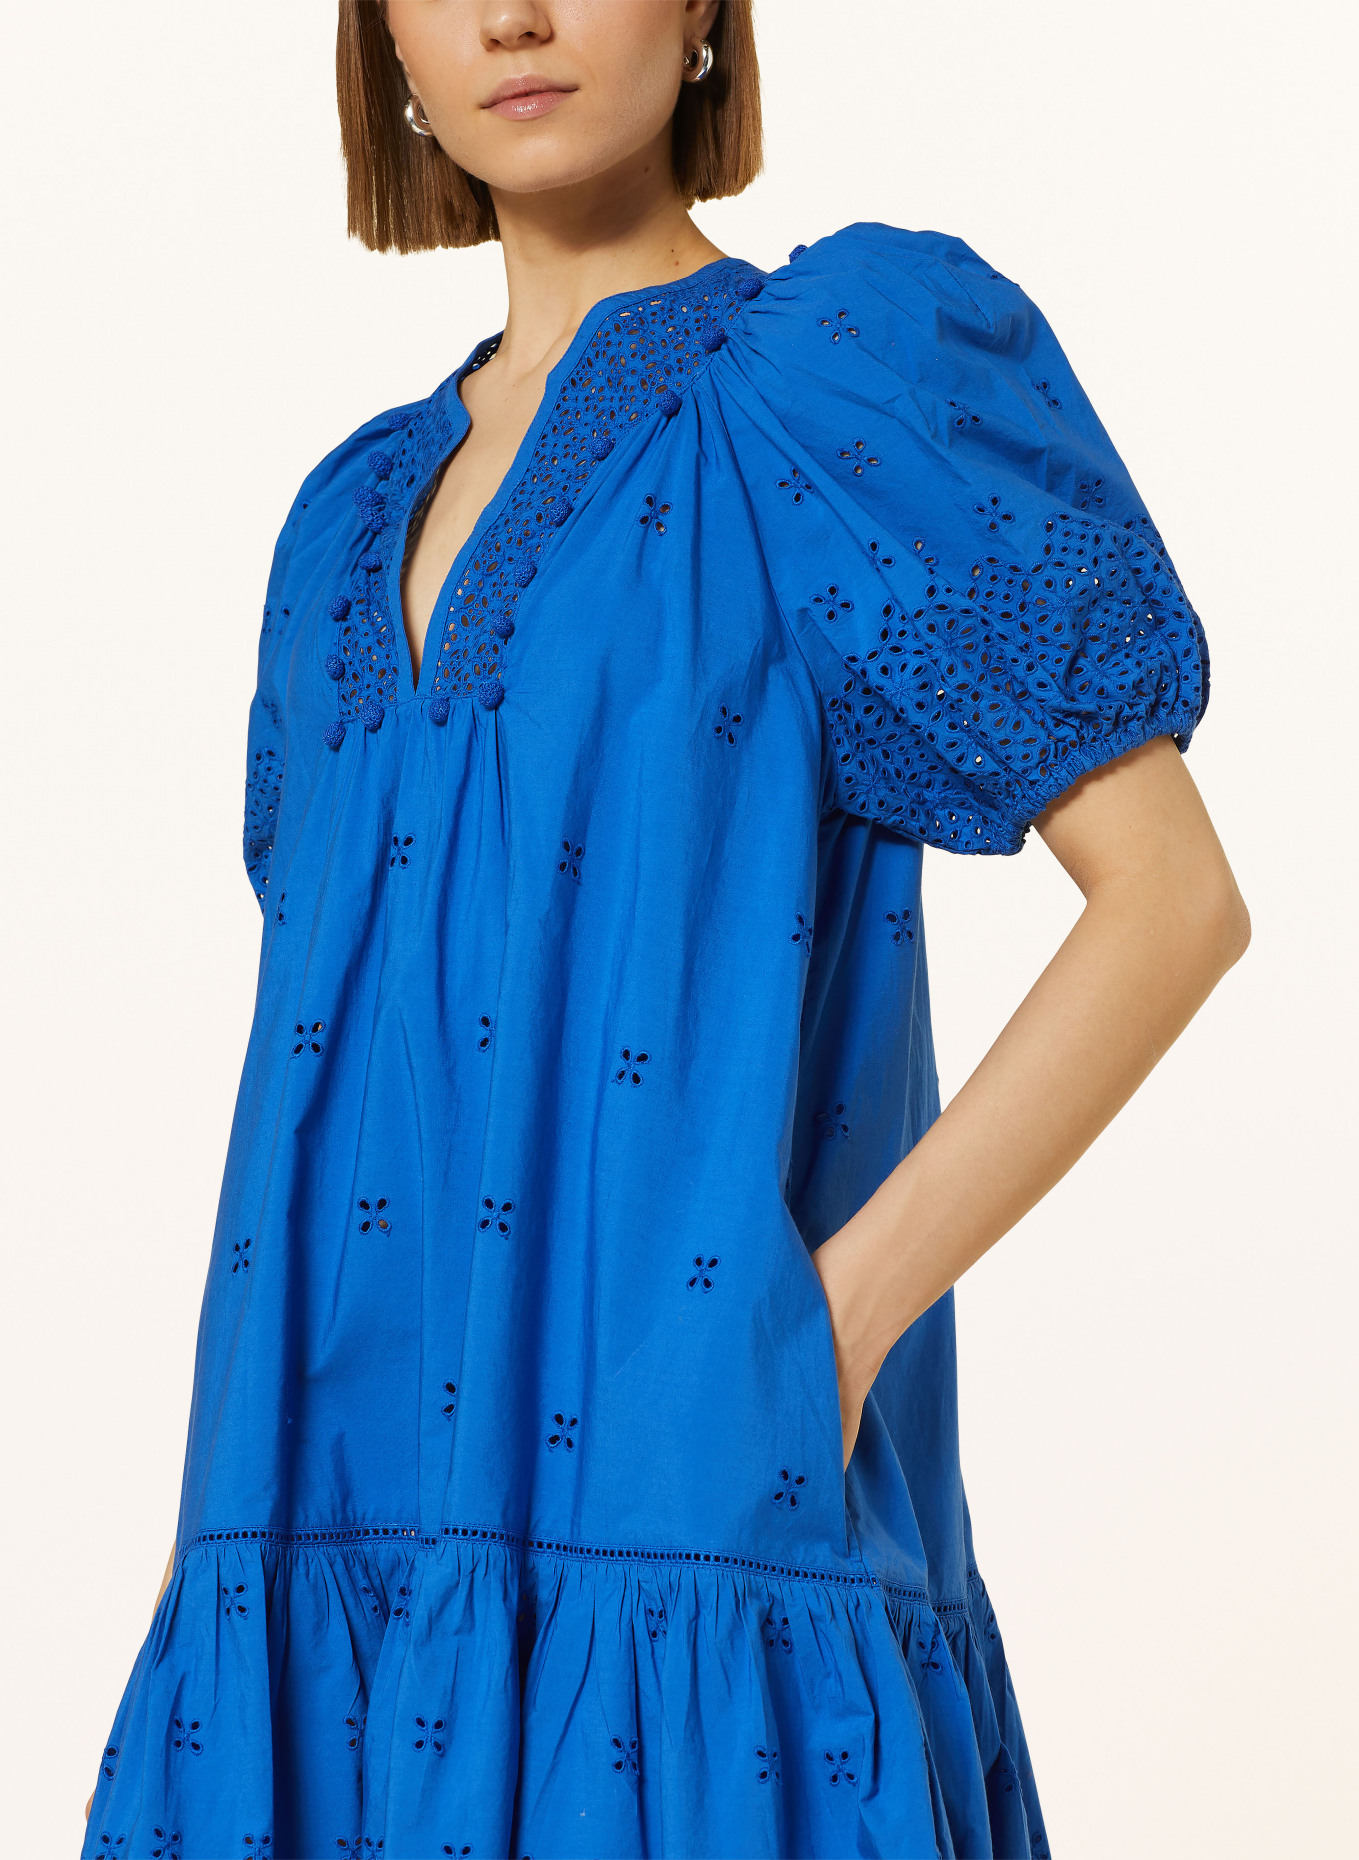 ULLA JOHNSON Kleid AURORA mit Spitze, Farbe: BLAU (Bild 4)